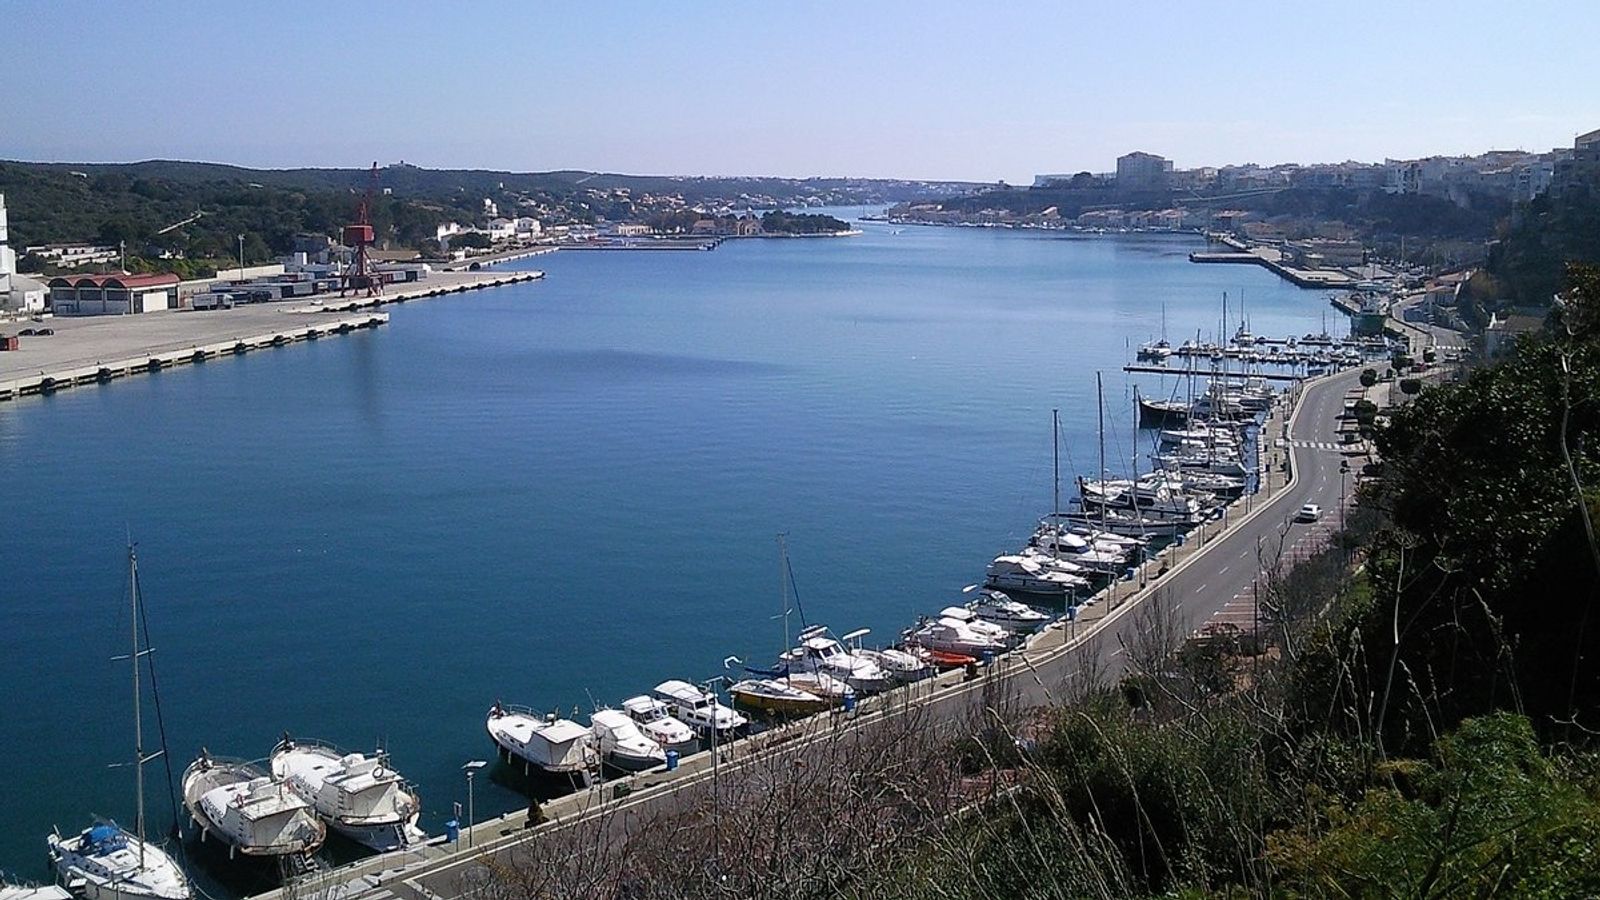 İspanya’nın PSOE-Sumar hükümeti Menorca adasında NATO deniz üssü kuruyor